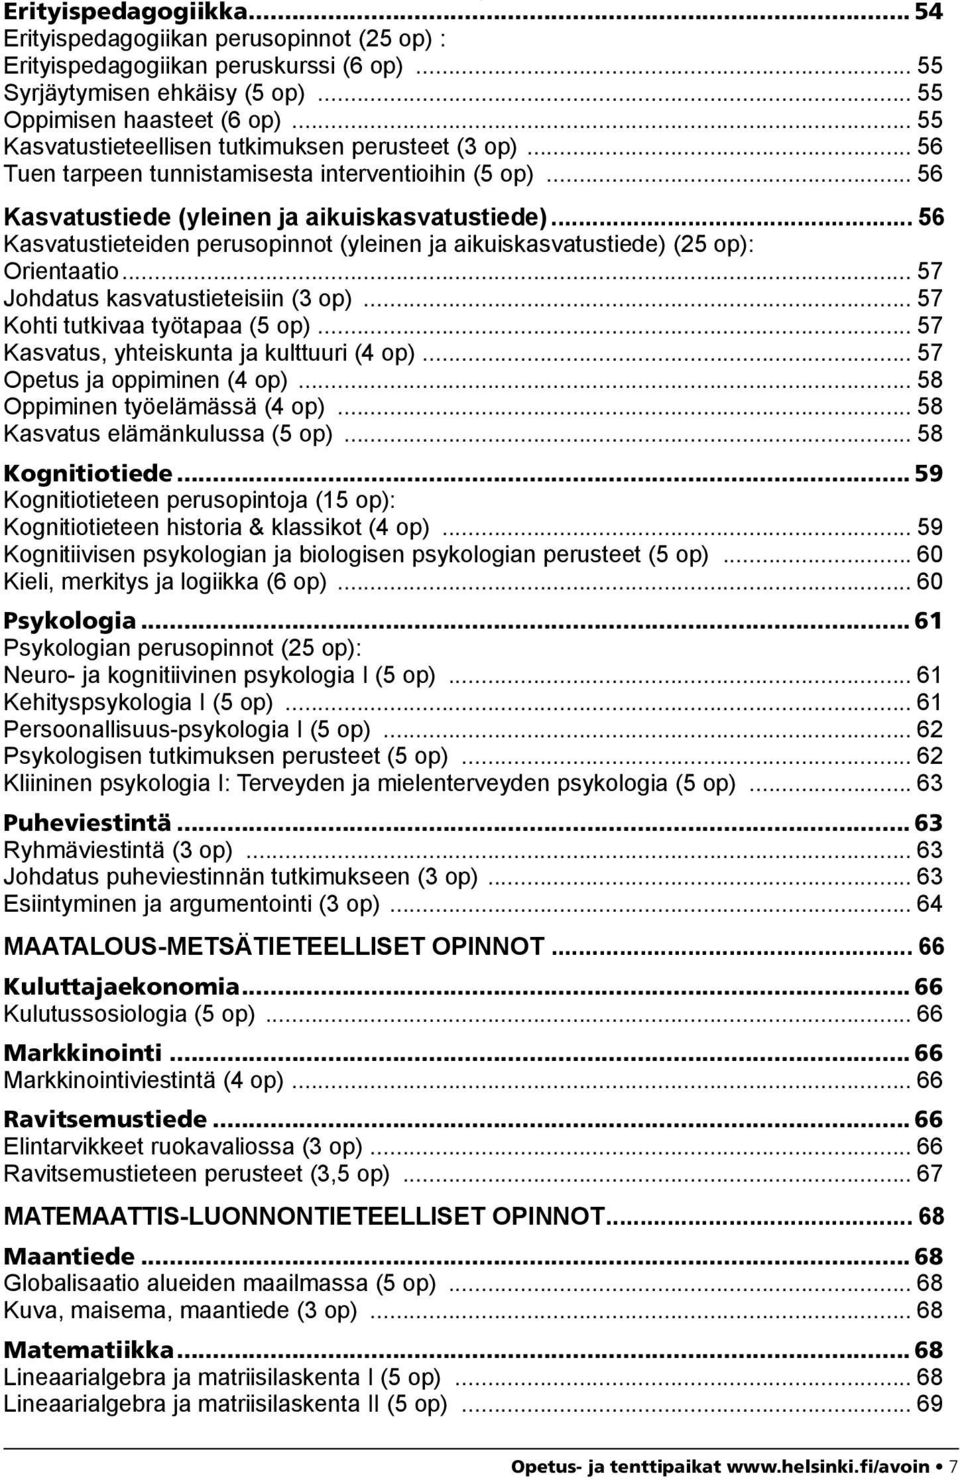 .. 56 Kasvatustieteiden perusopinnot (yleinen ja aikuiskasvatustiede) (25 op): Orientaatio... 57 Johdatus kasvatustieteisiin (3 op)... 57 Kohti tutkivaa työtapaa (5 op).